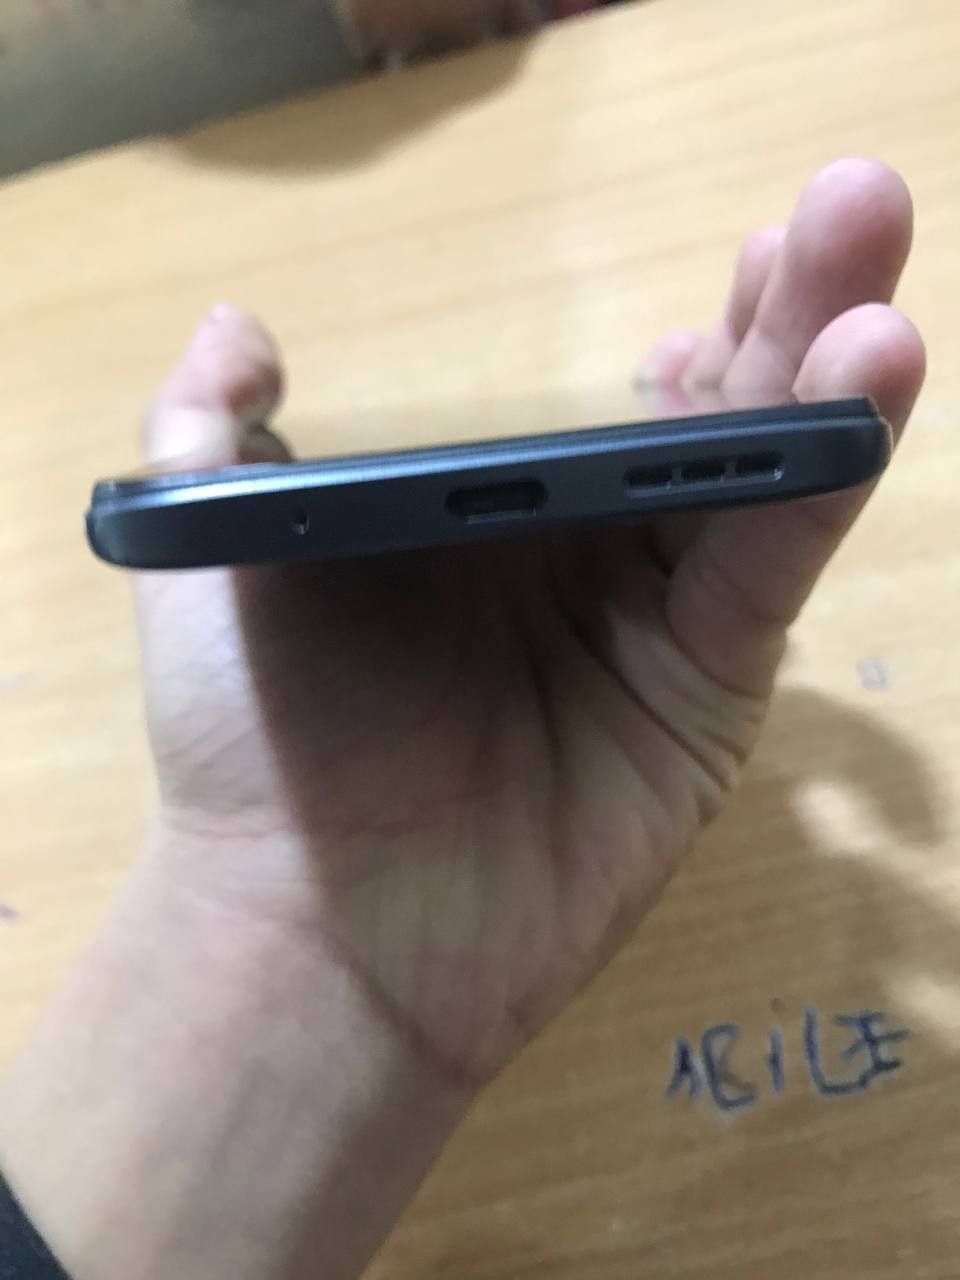 Xiaomi Redmi note 11